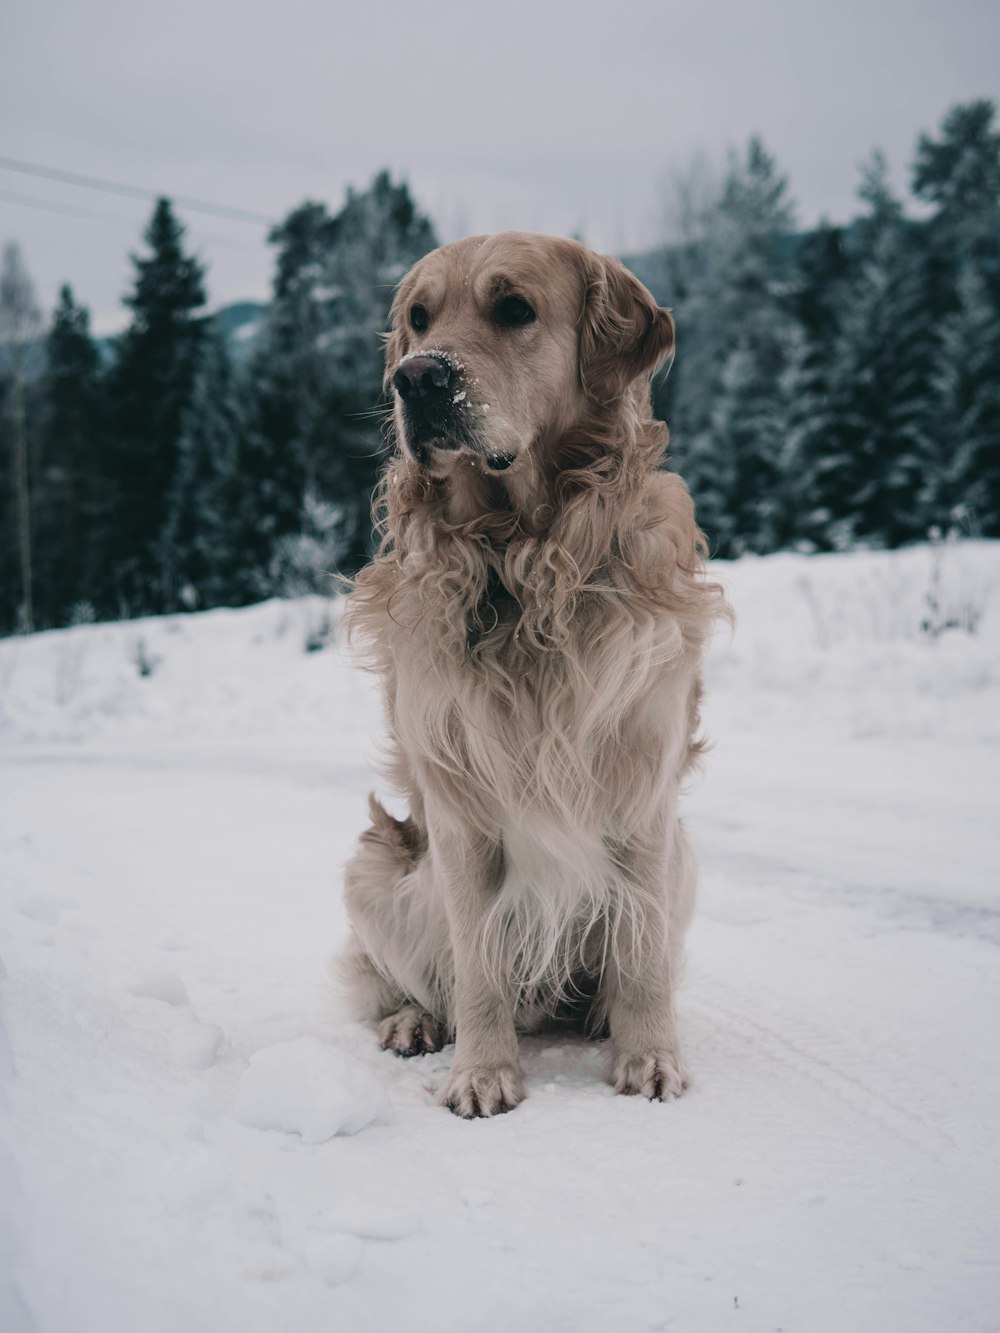 Brauner Hund, der auf Schnee in der Nähe von grünen Bäumen steht